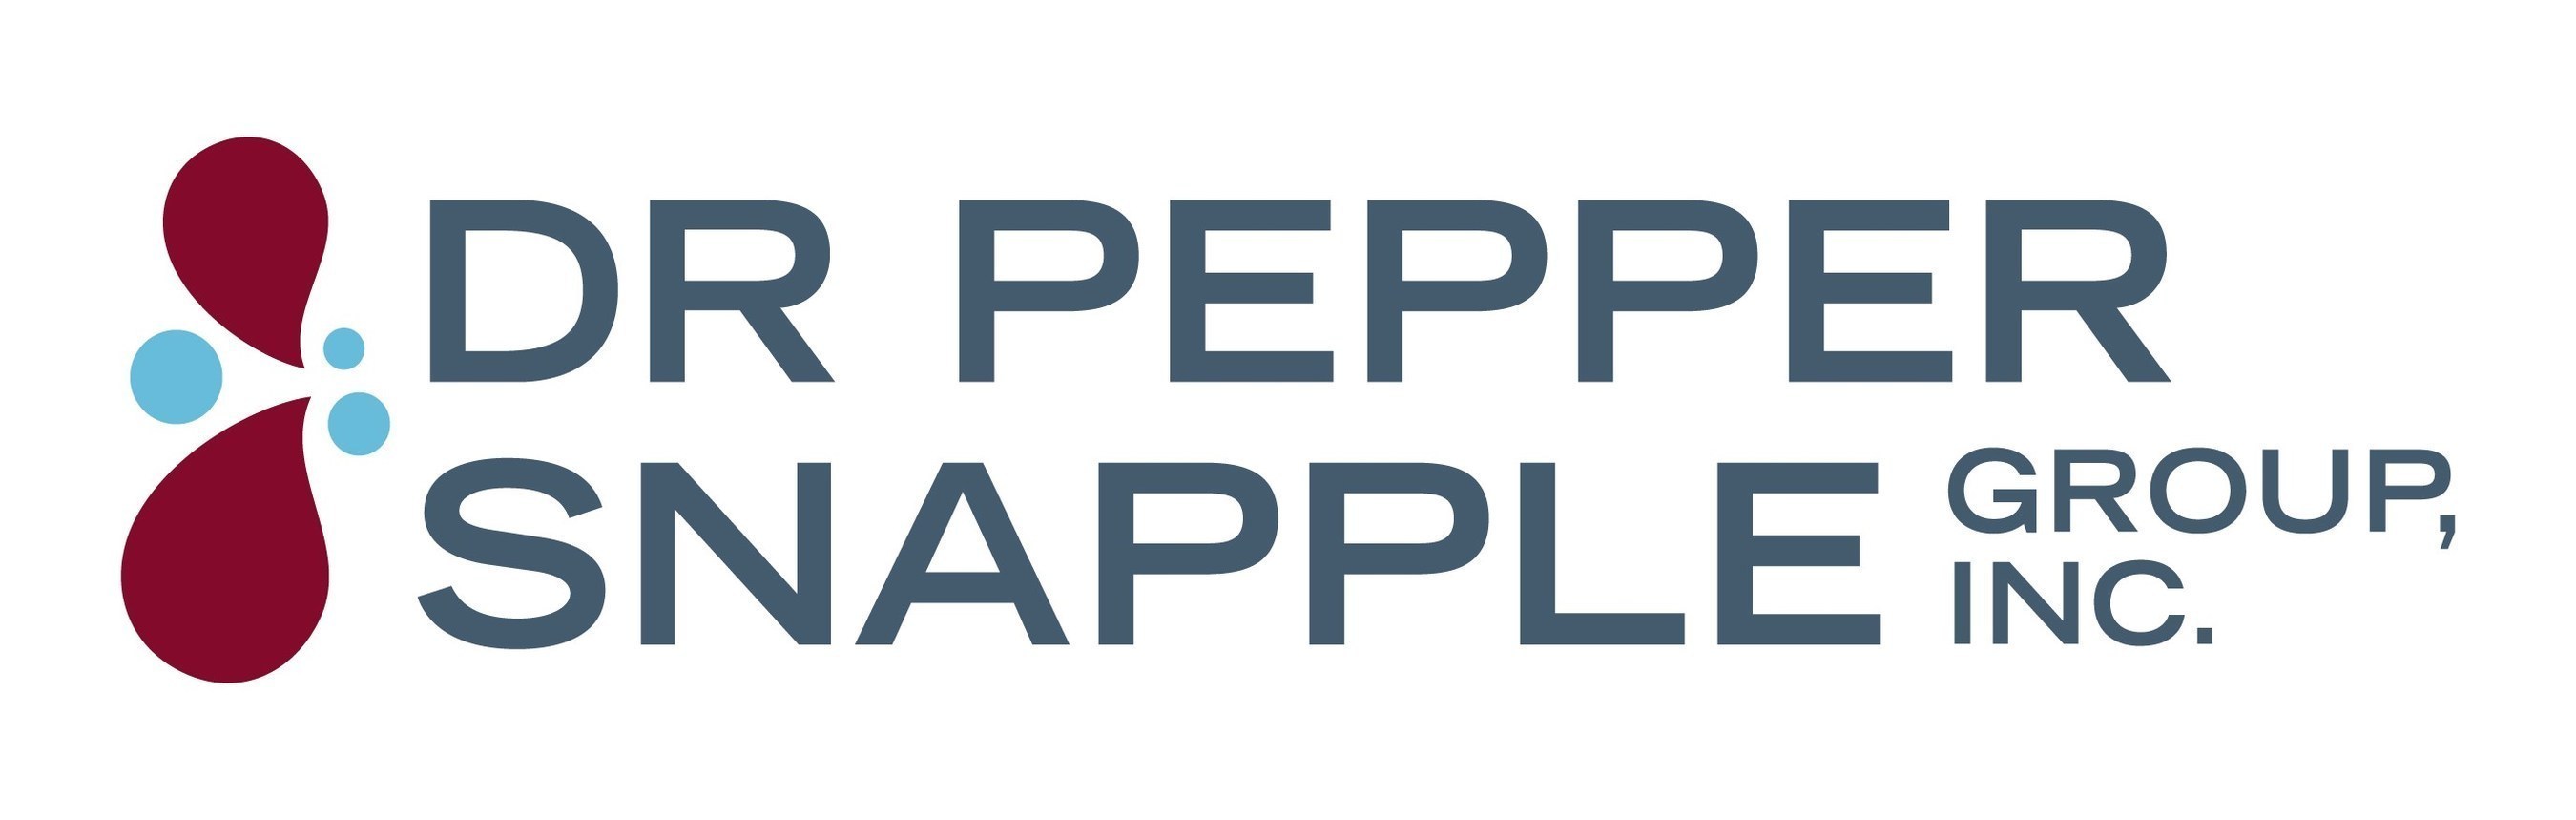 Dr Pepper Snapple Group, Inc. Logo